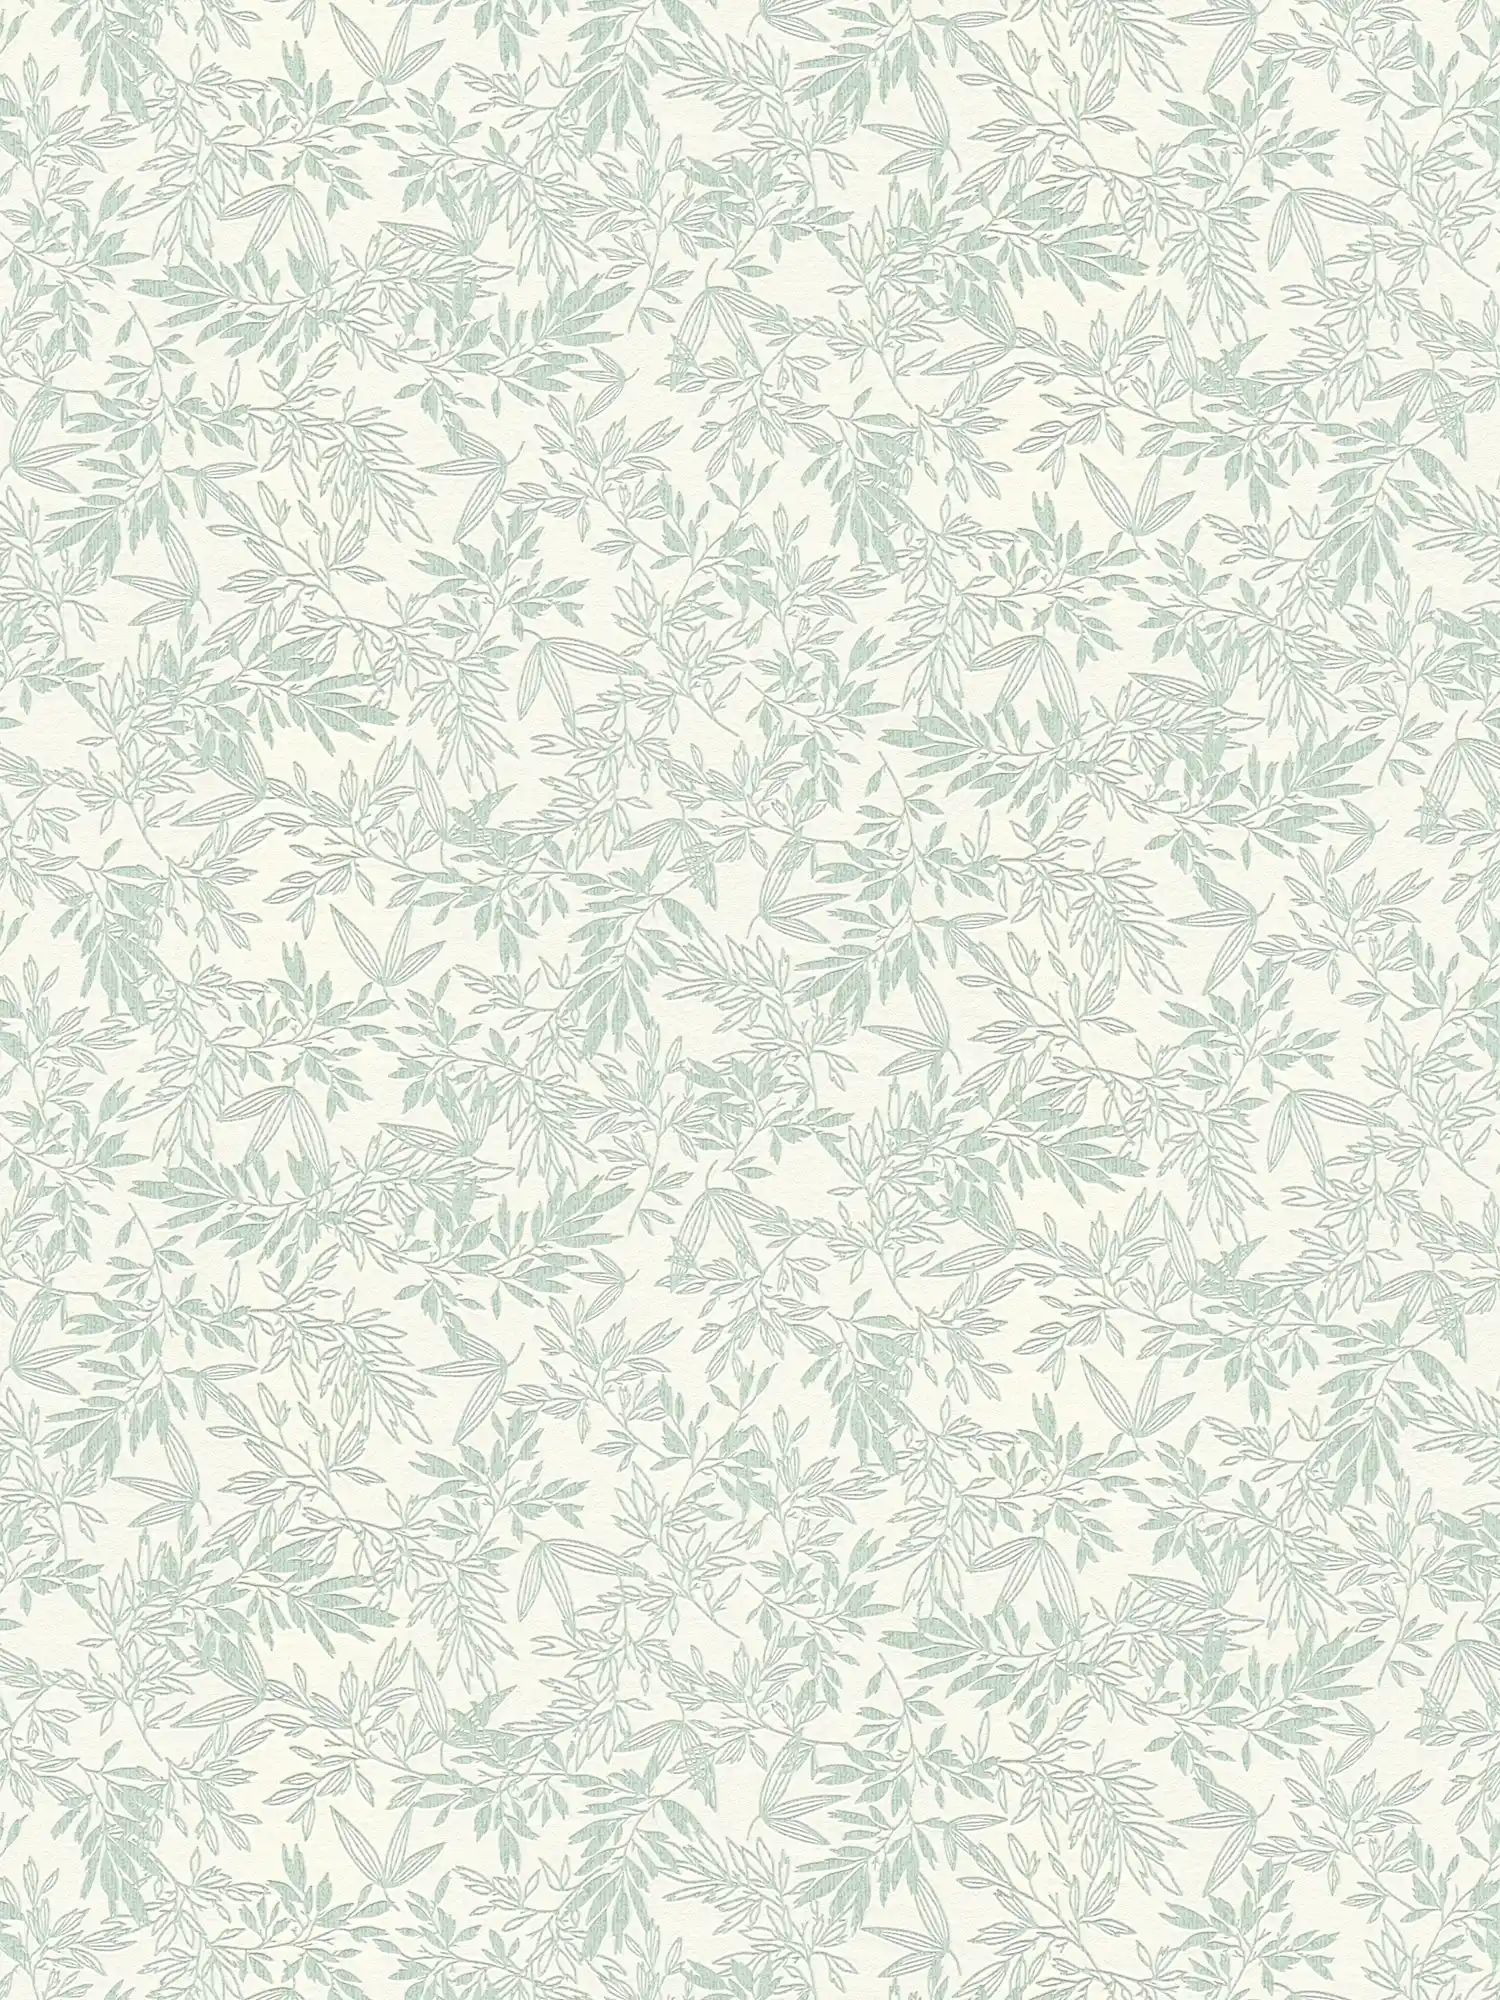 Vliesbehang met groot bladmotief mat - groen, wit
